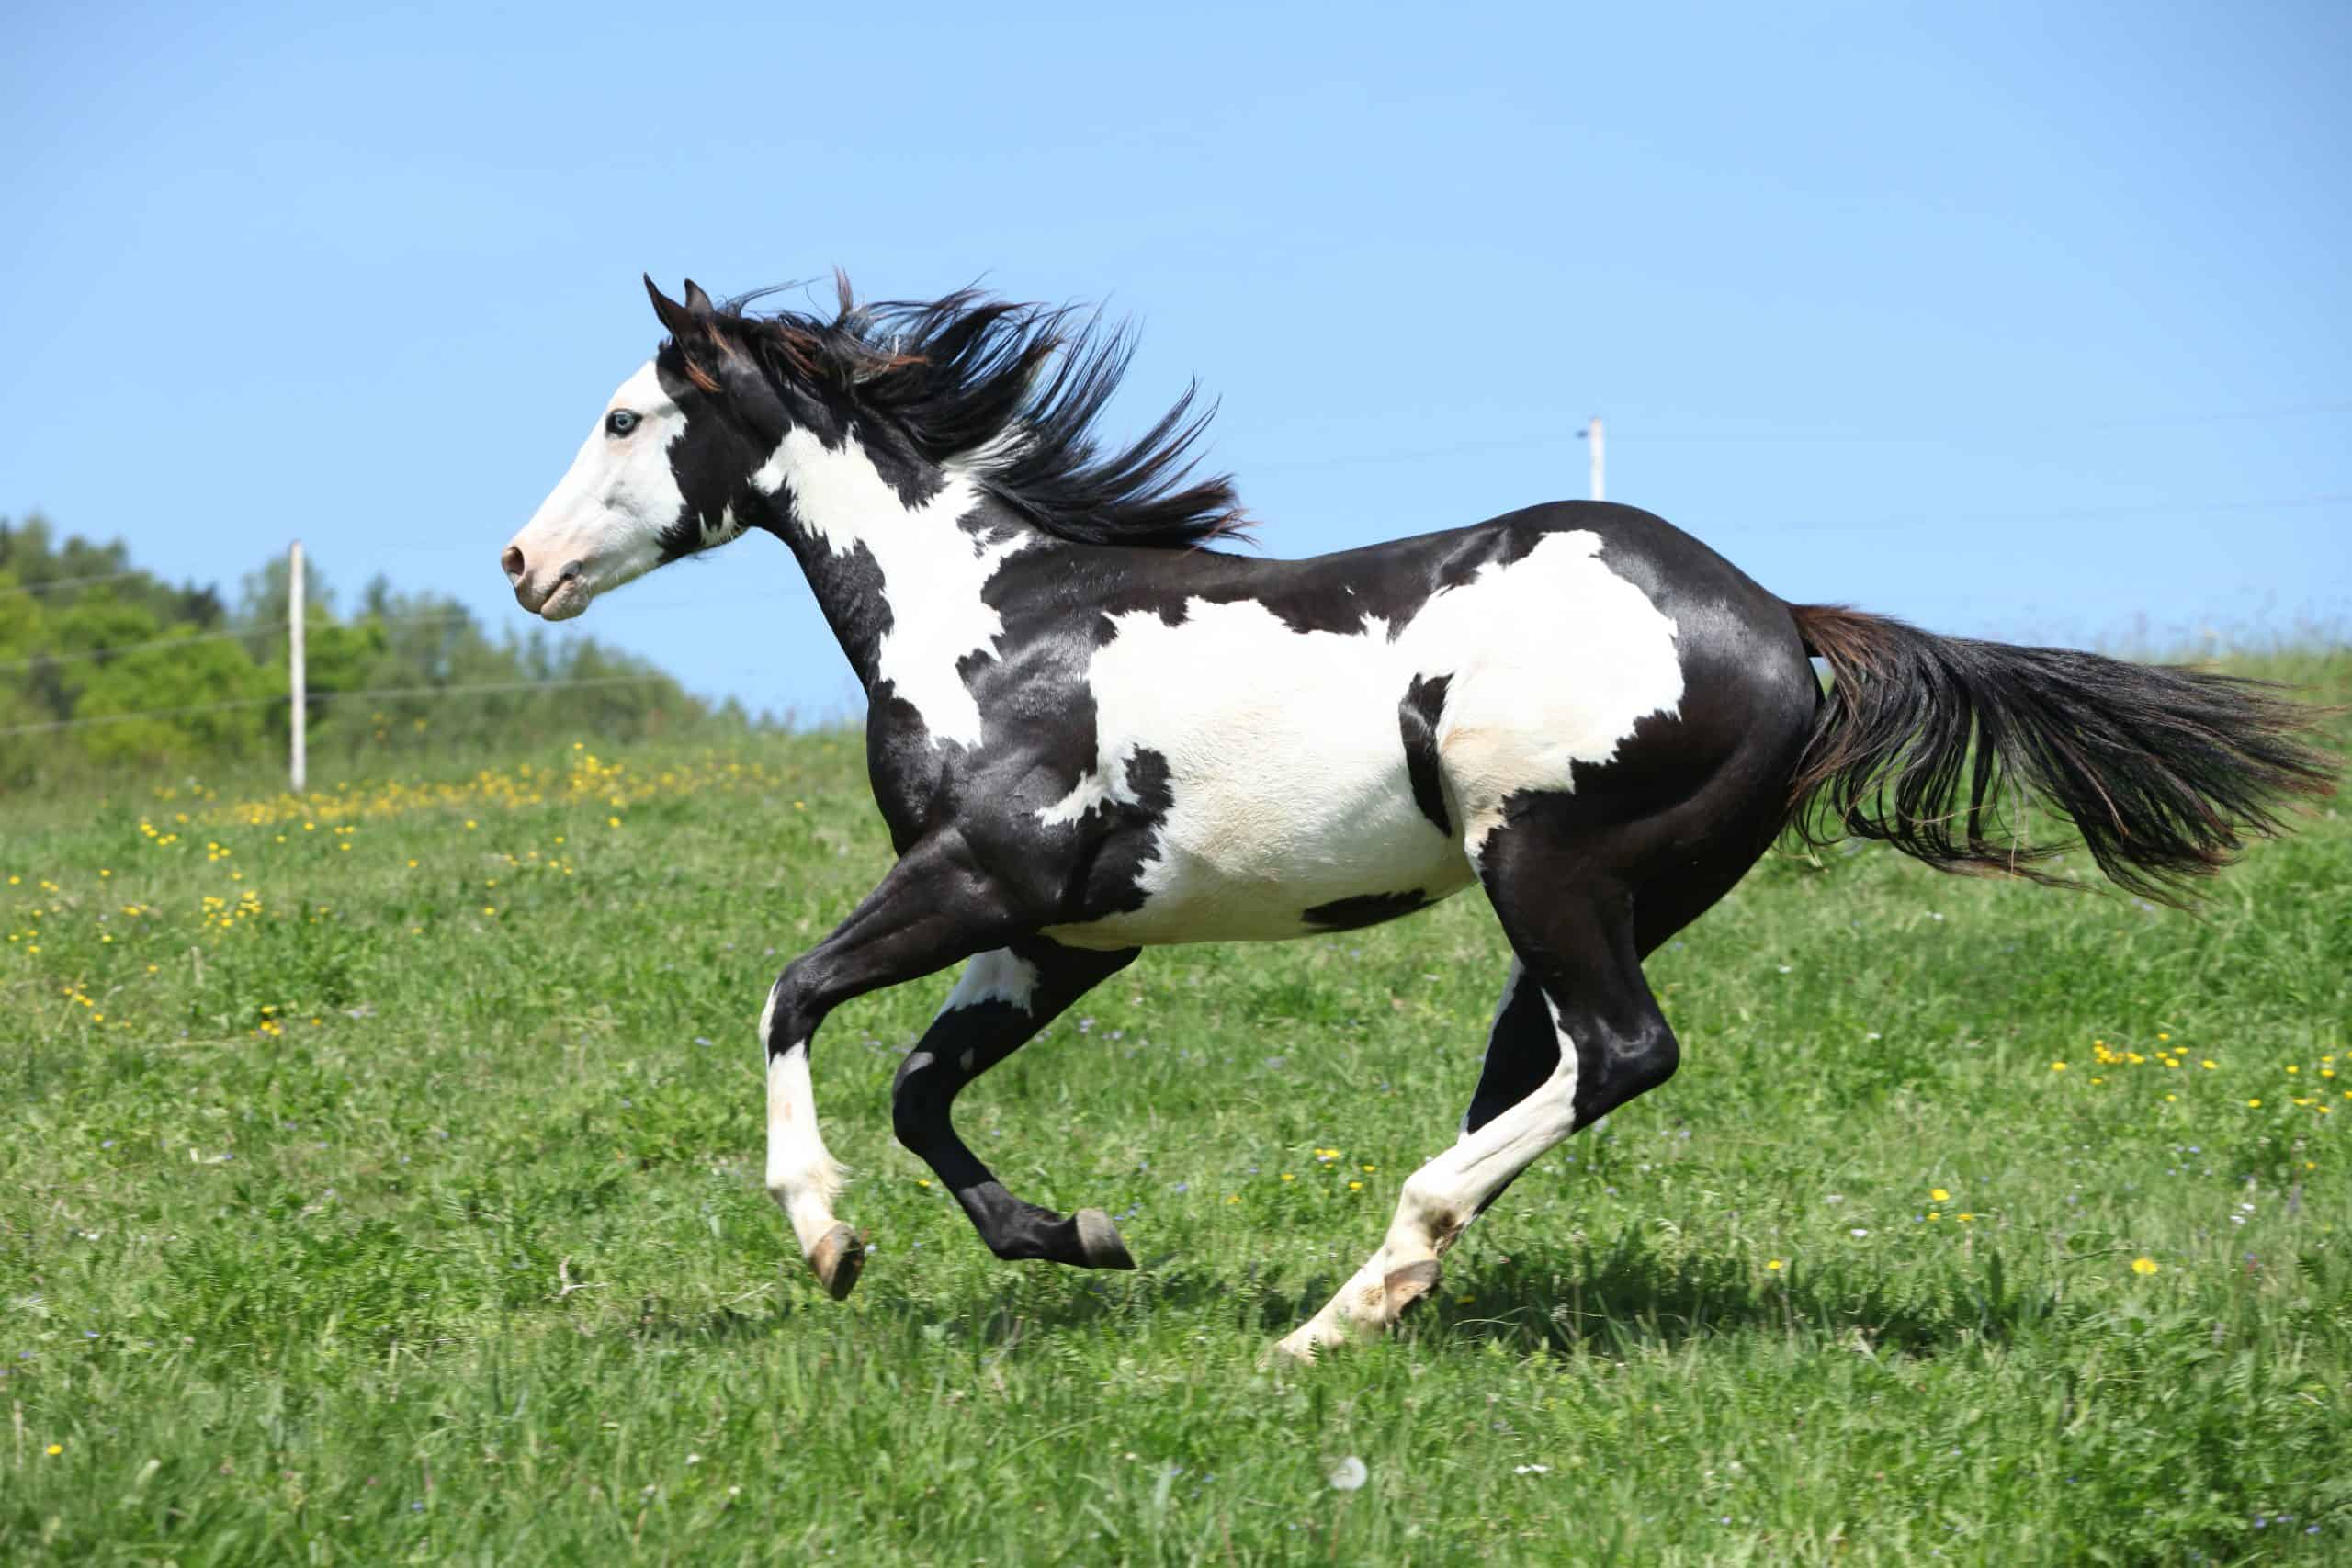 Paint horse stallion